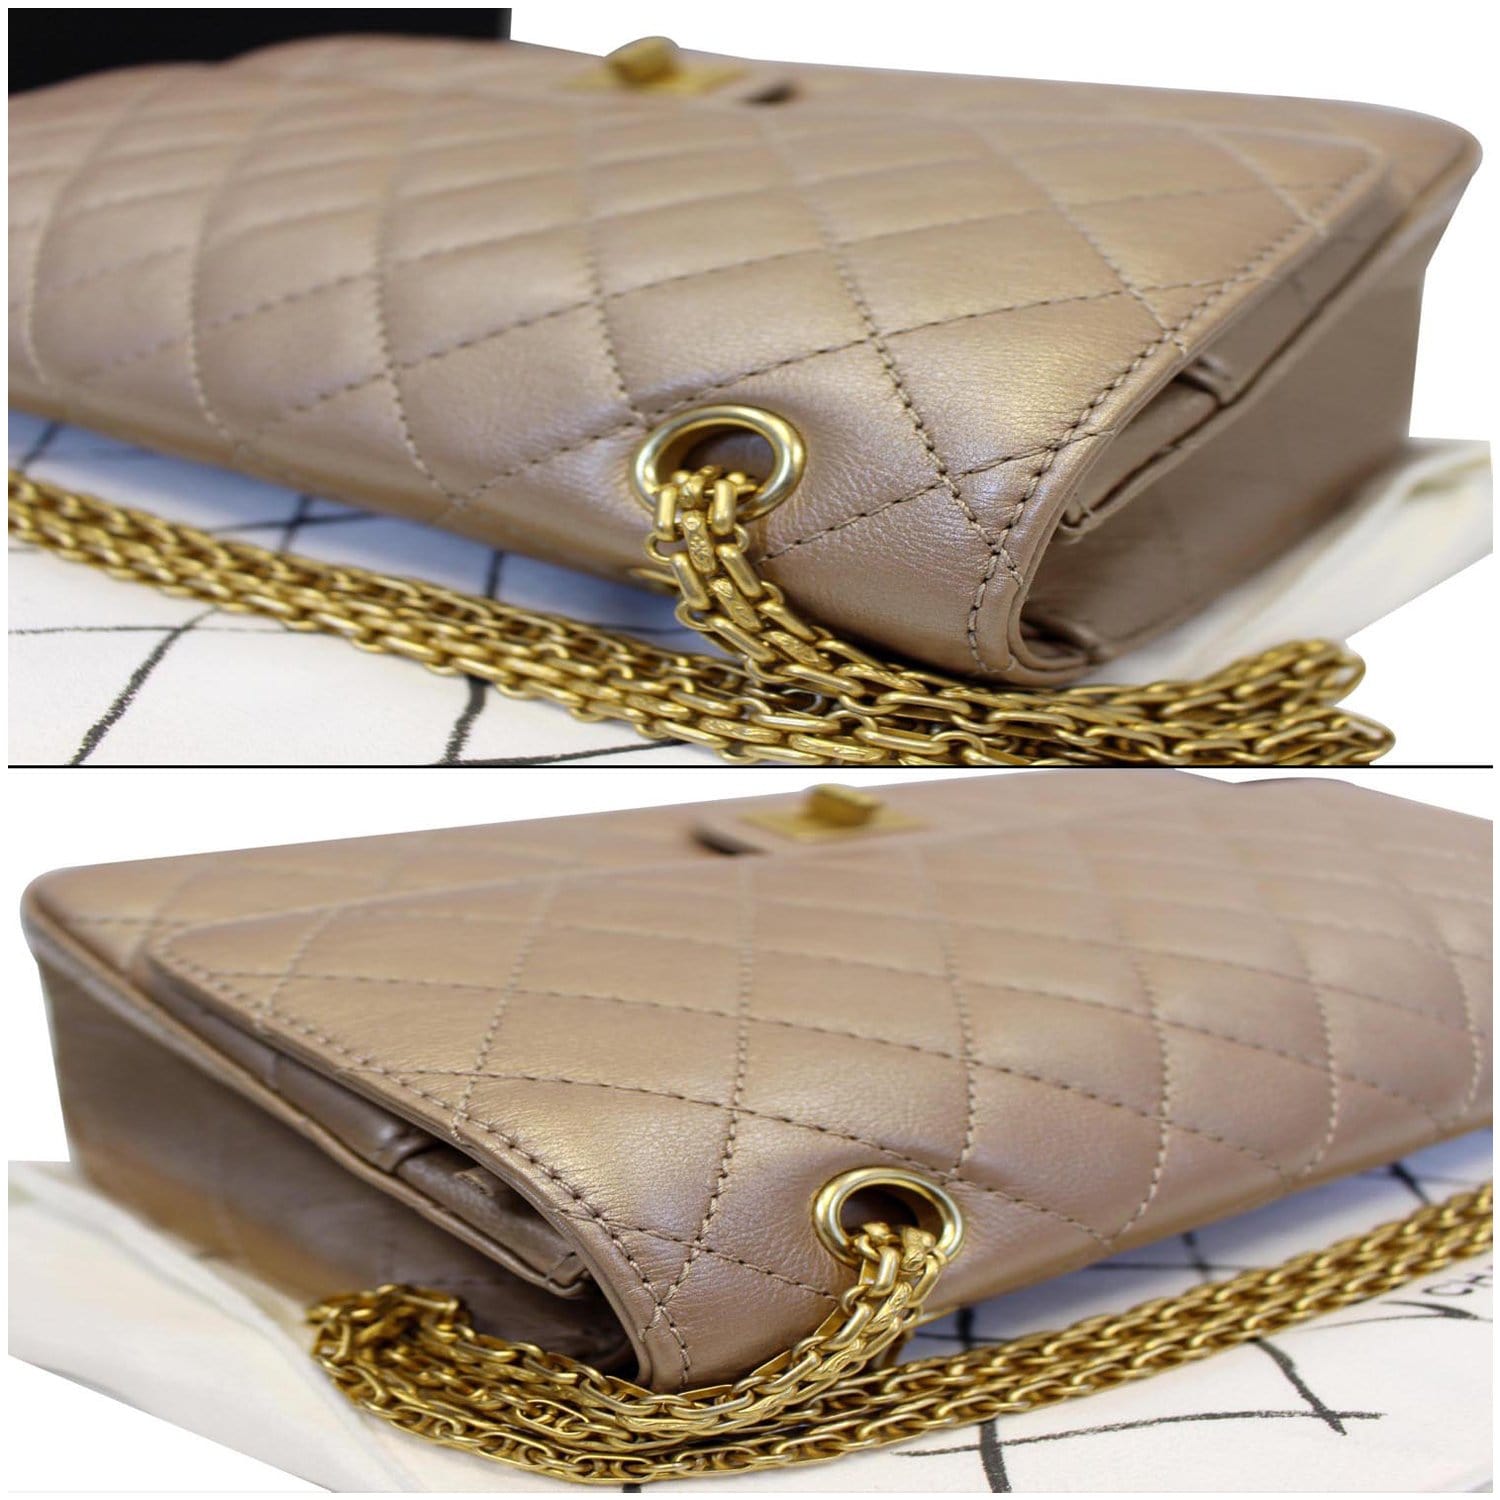 Mademoiselle leather handbag